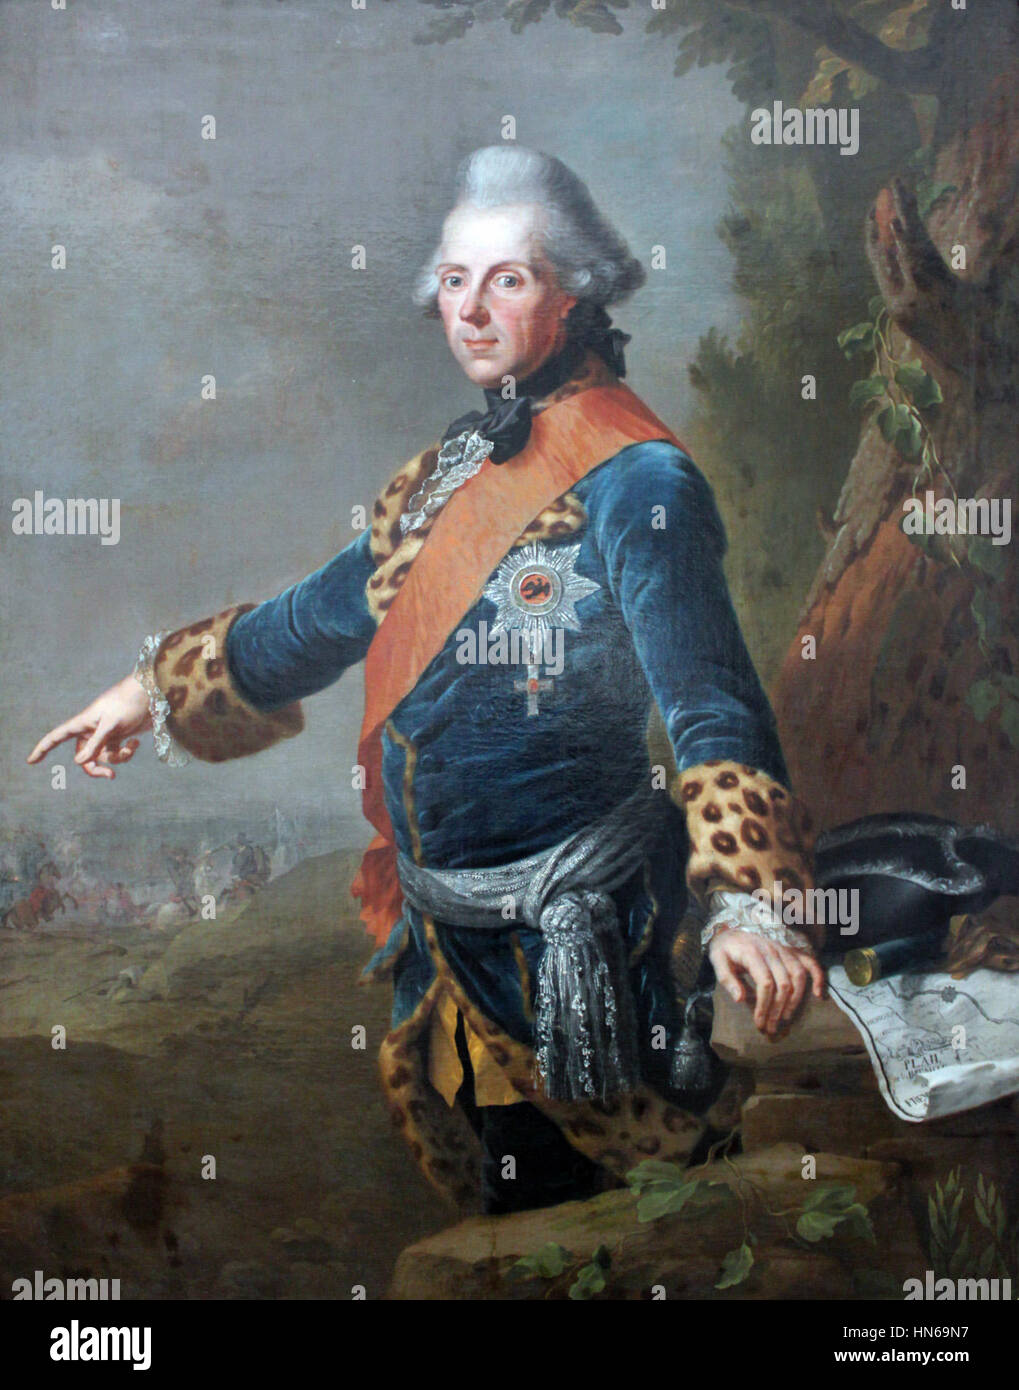 1769 Tischbein d.Ä. Prinz Heinrich von Preussen anagoria Stock Photo